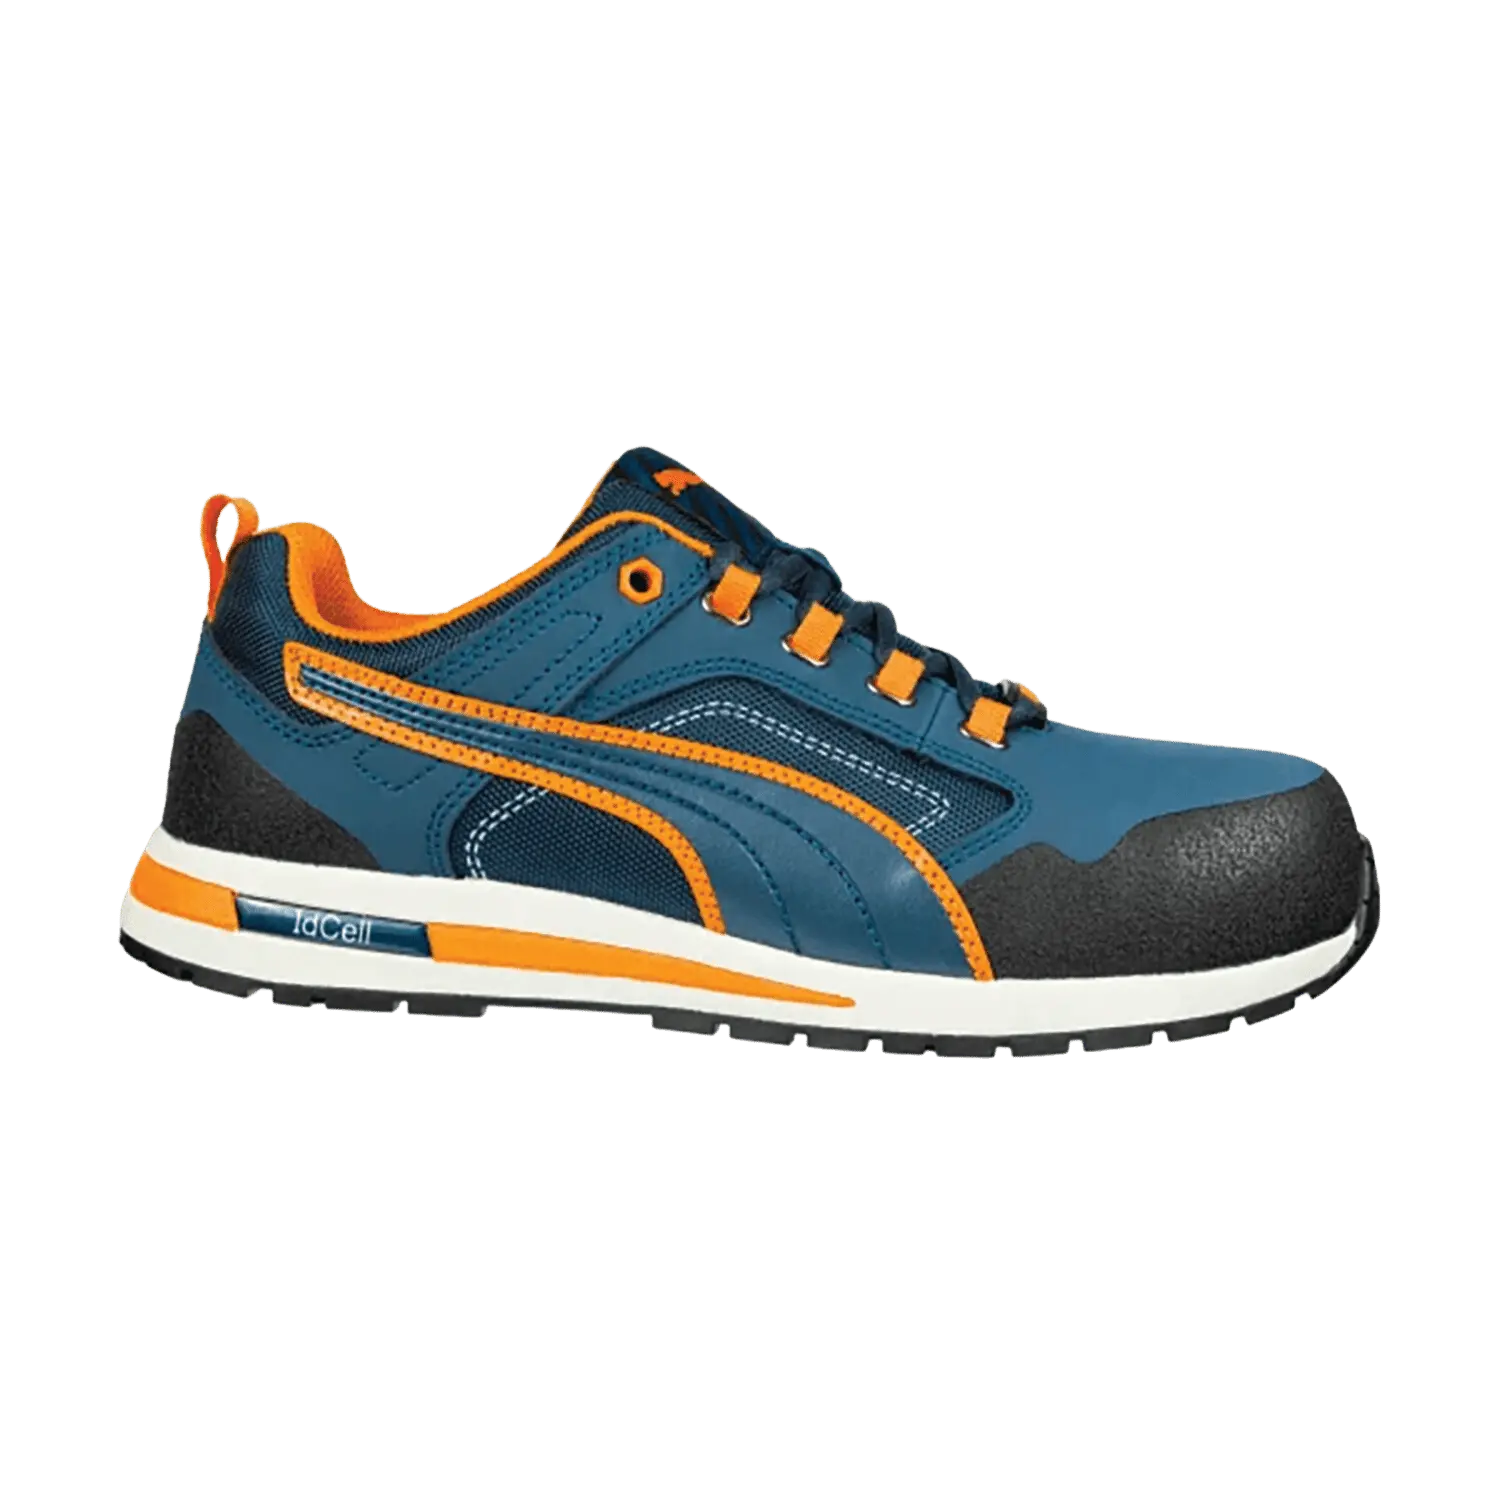 Chaussures de sécurité basse CrossTwist Low S3 HRO SRC - bleu/orange - taille 46